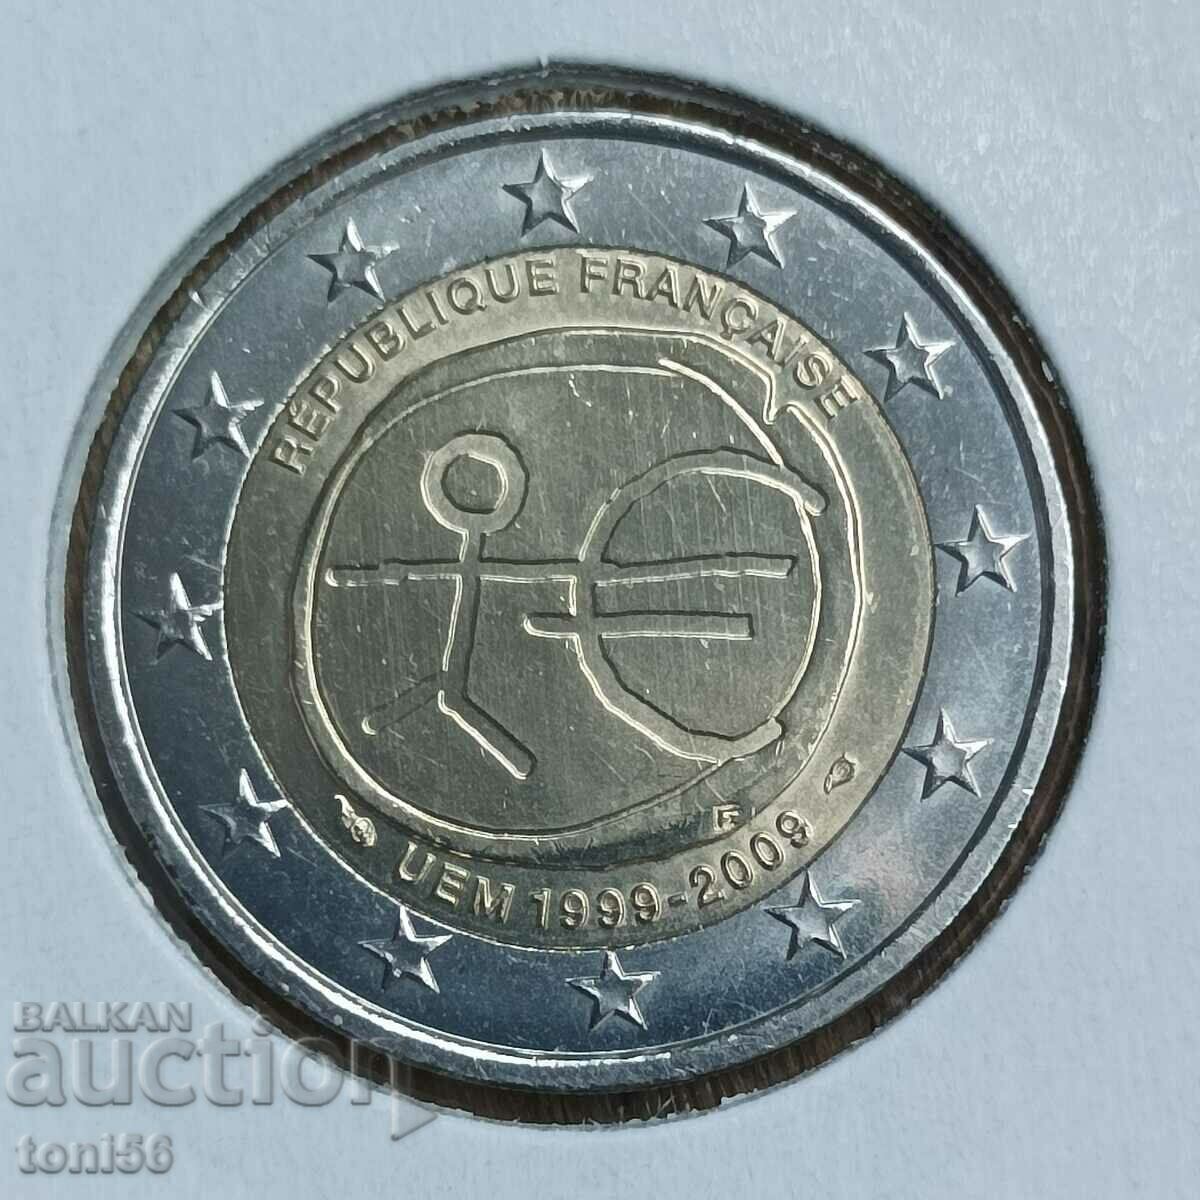 Γαλλία 2 ευρώ 2009 - 10 "Economic Union"